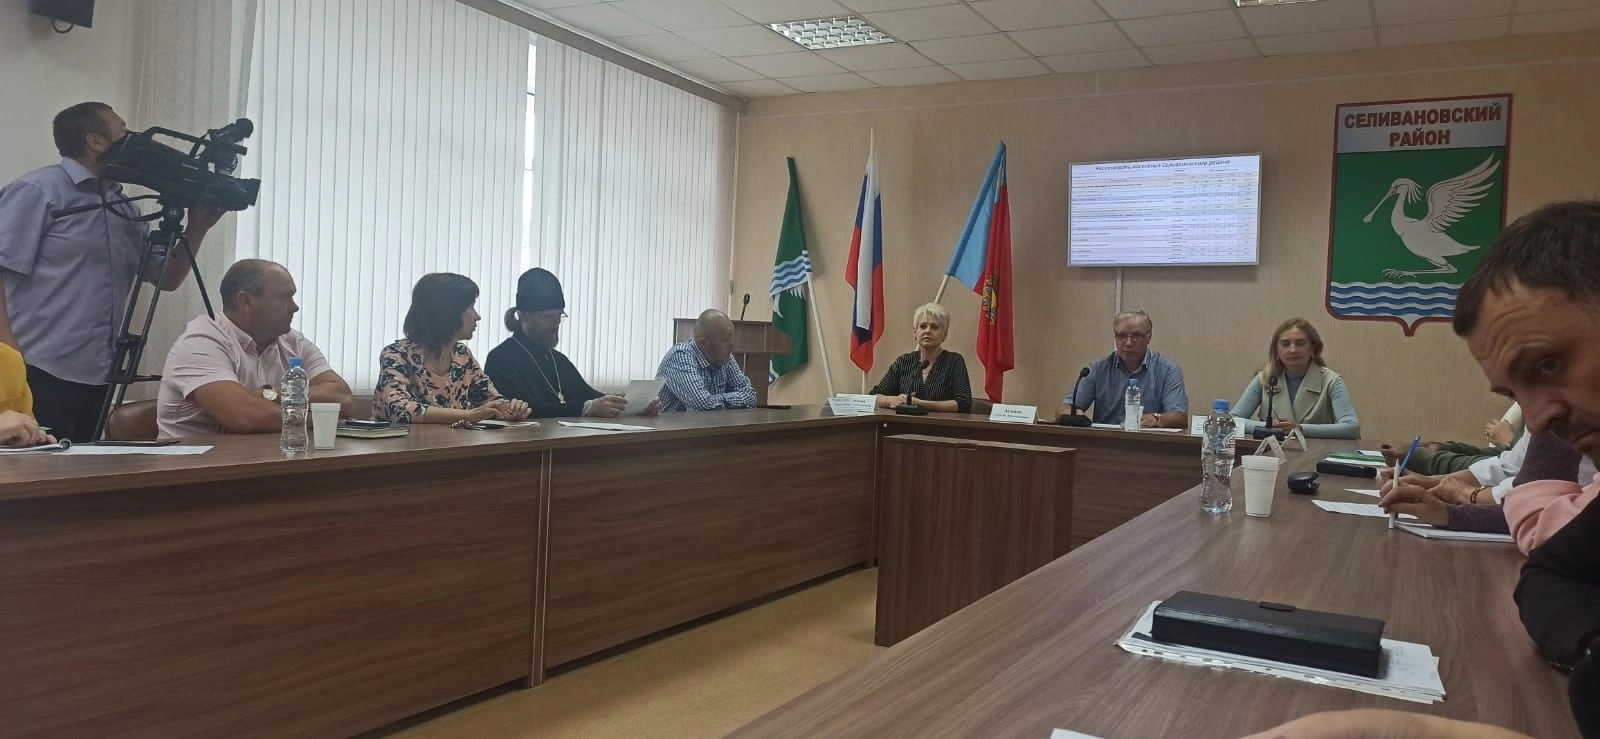 Совет при главе администрации Селивановского района по вопросам межрегиональных и межконфессиональных отношений